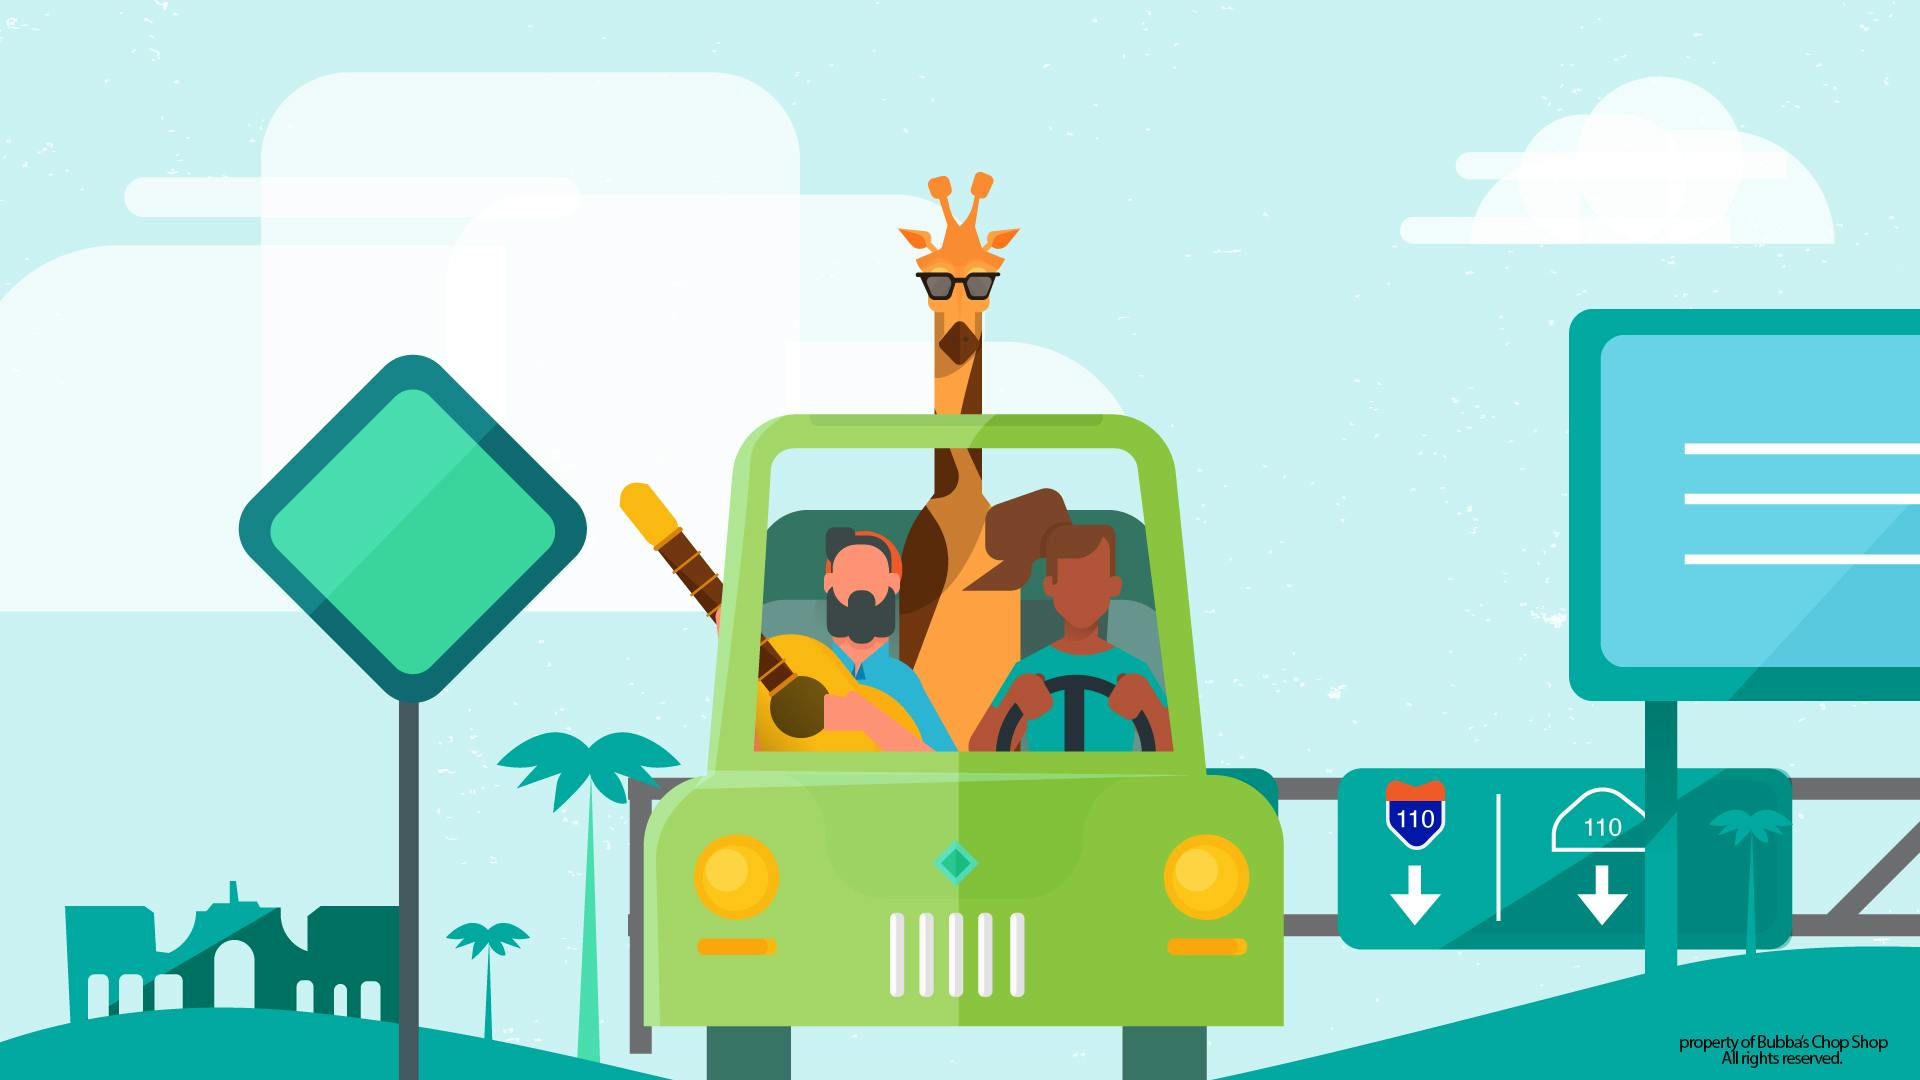 A car driving with a giraffe